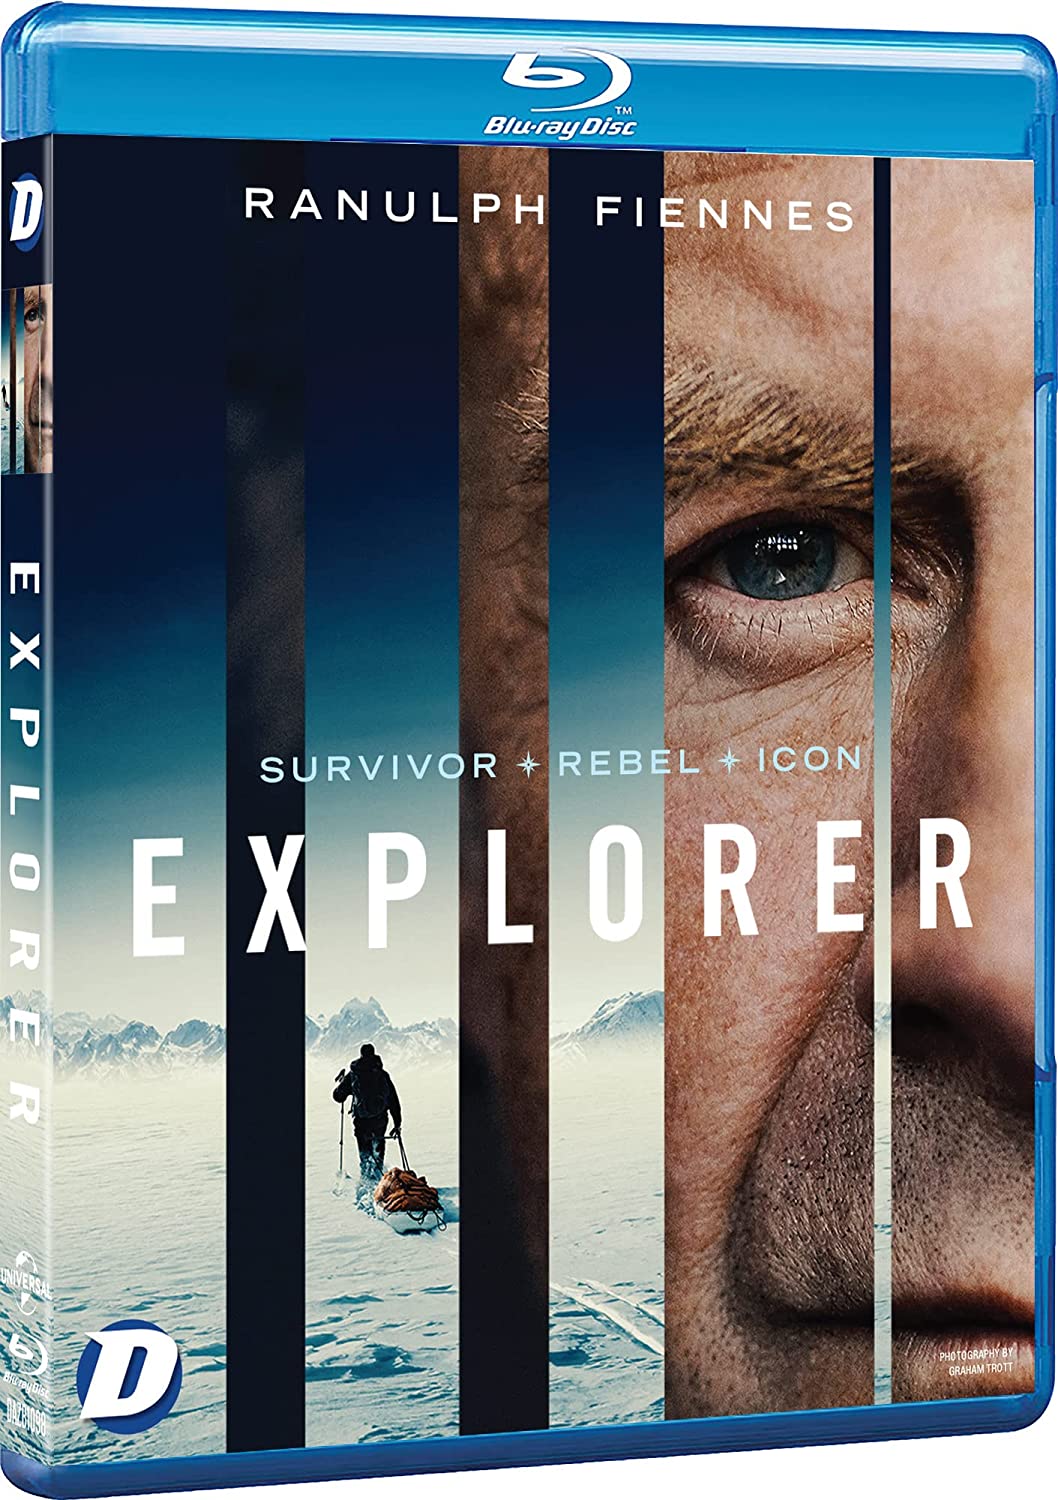 Explorer: Ranulph Fiennes – Überlebender, Rebell, Ikone [Blu-Ray]